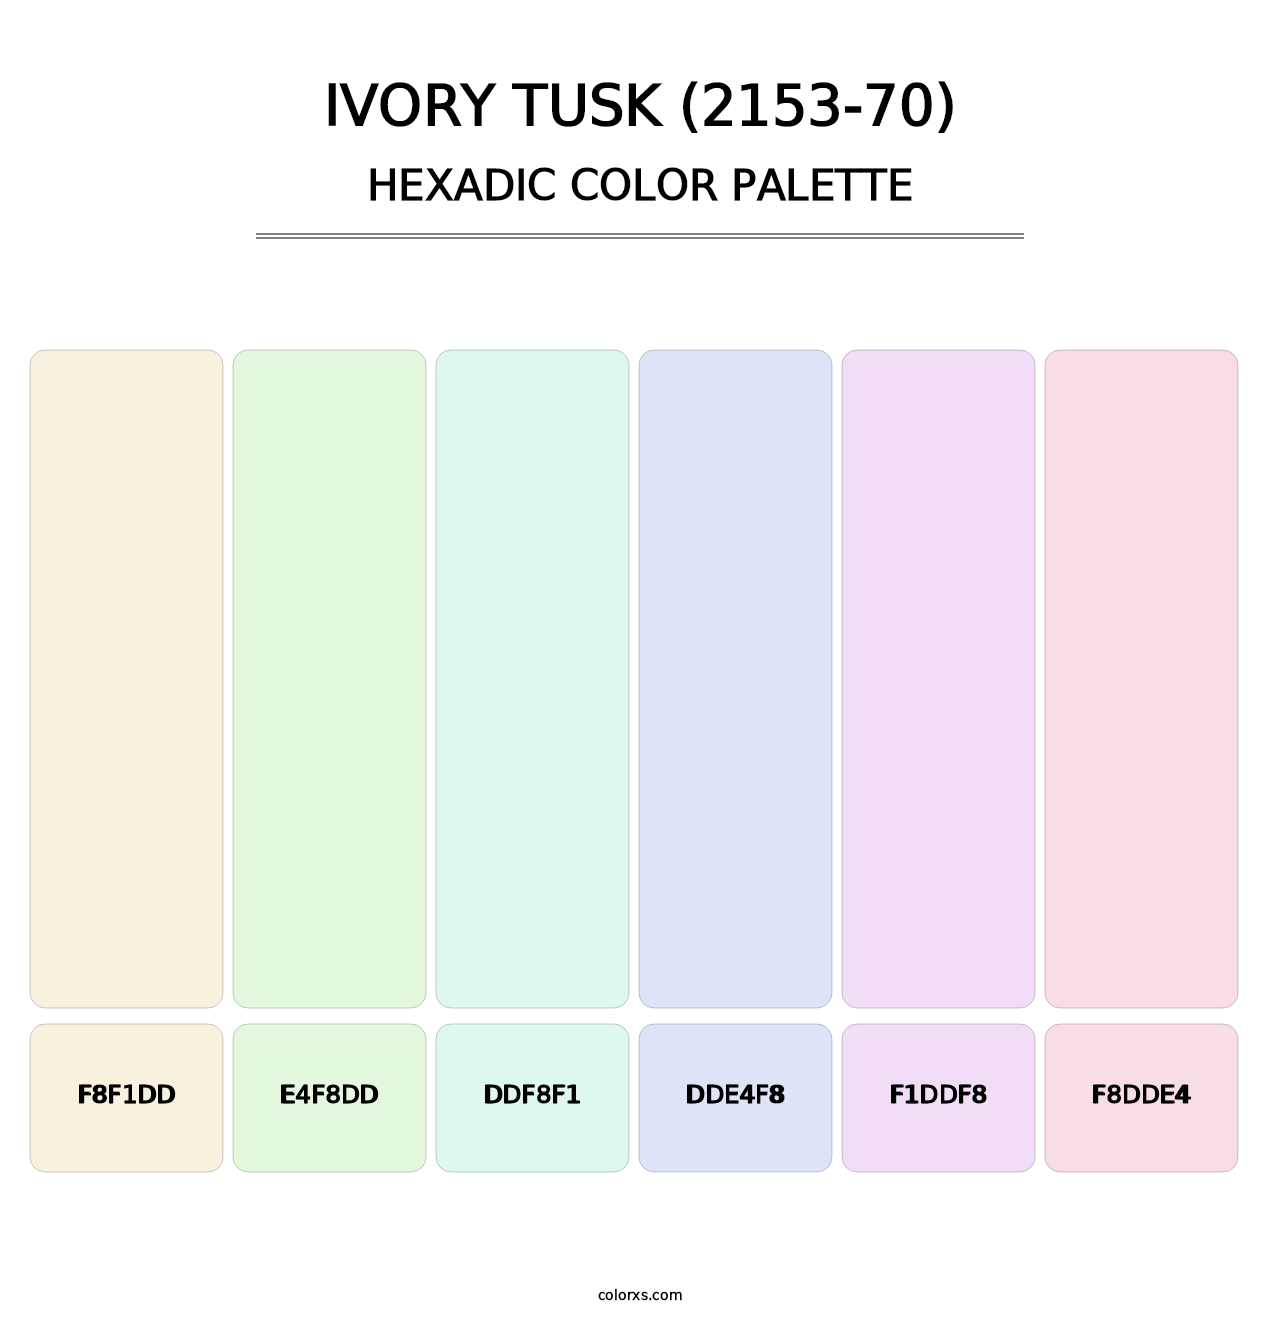 Ivory Tusk (2153-70) - Hexadic Color Palette